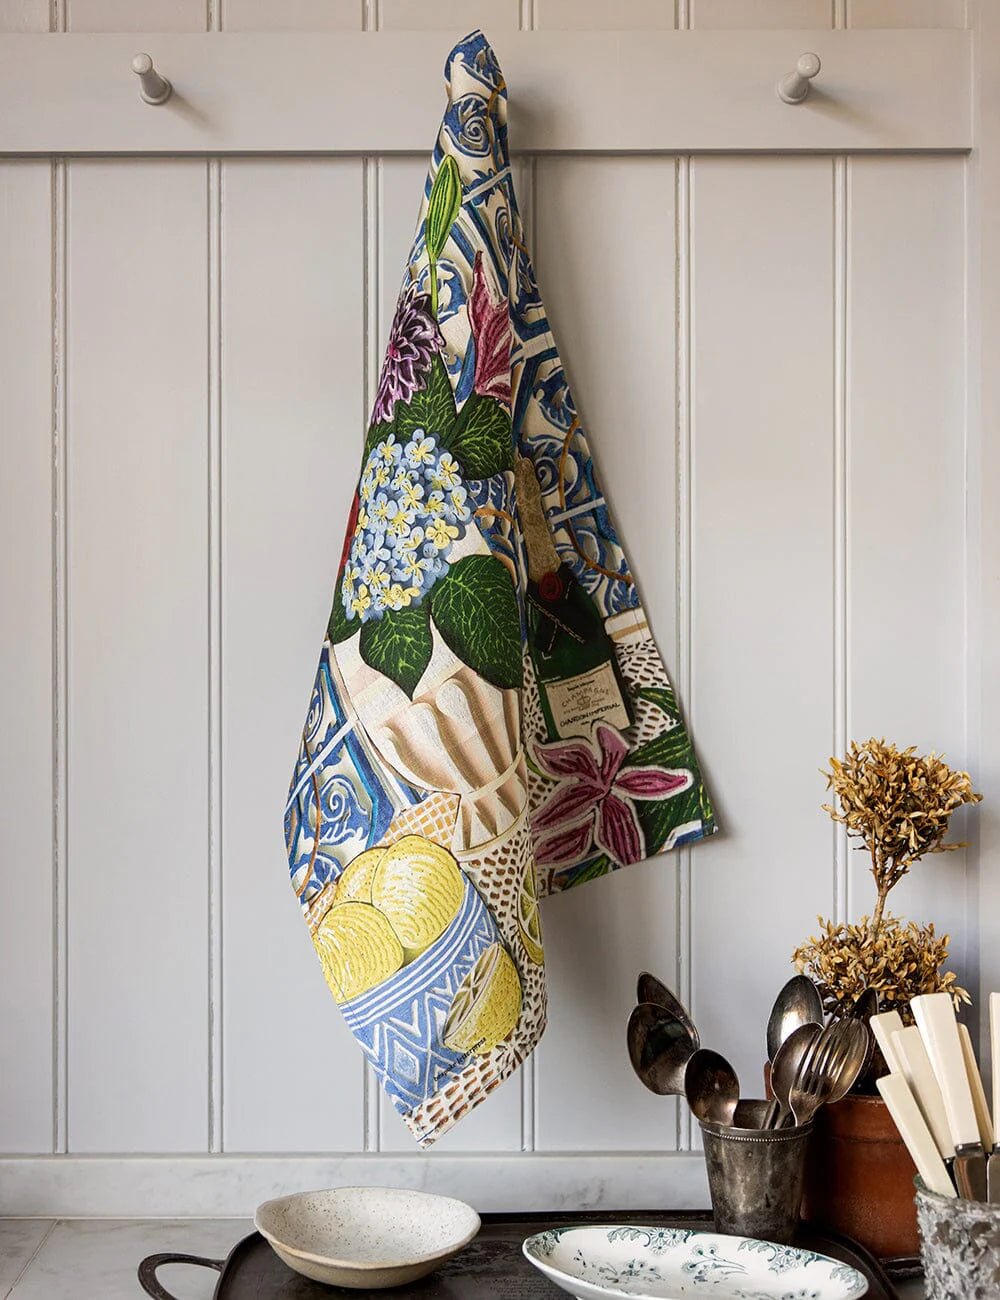 Bespoke Letterpress - Hydrangea 100% Linen Tea Towel - The Flower Crate